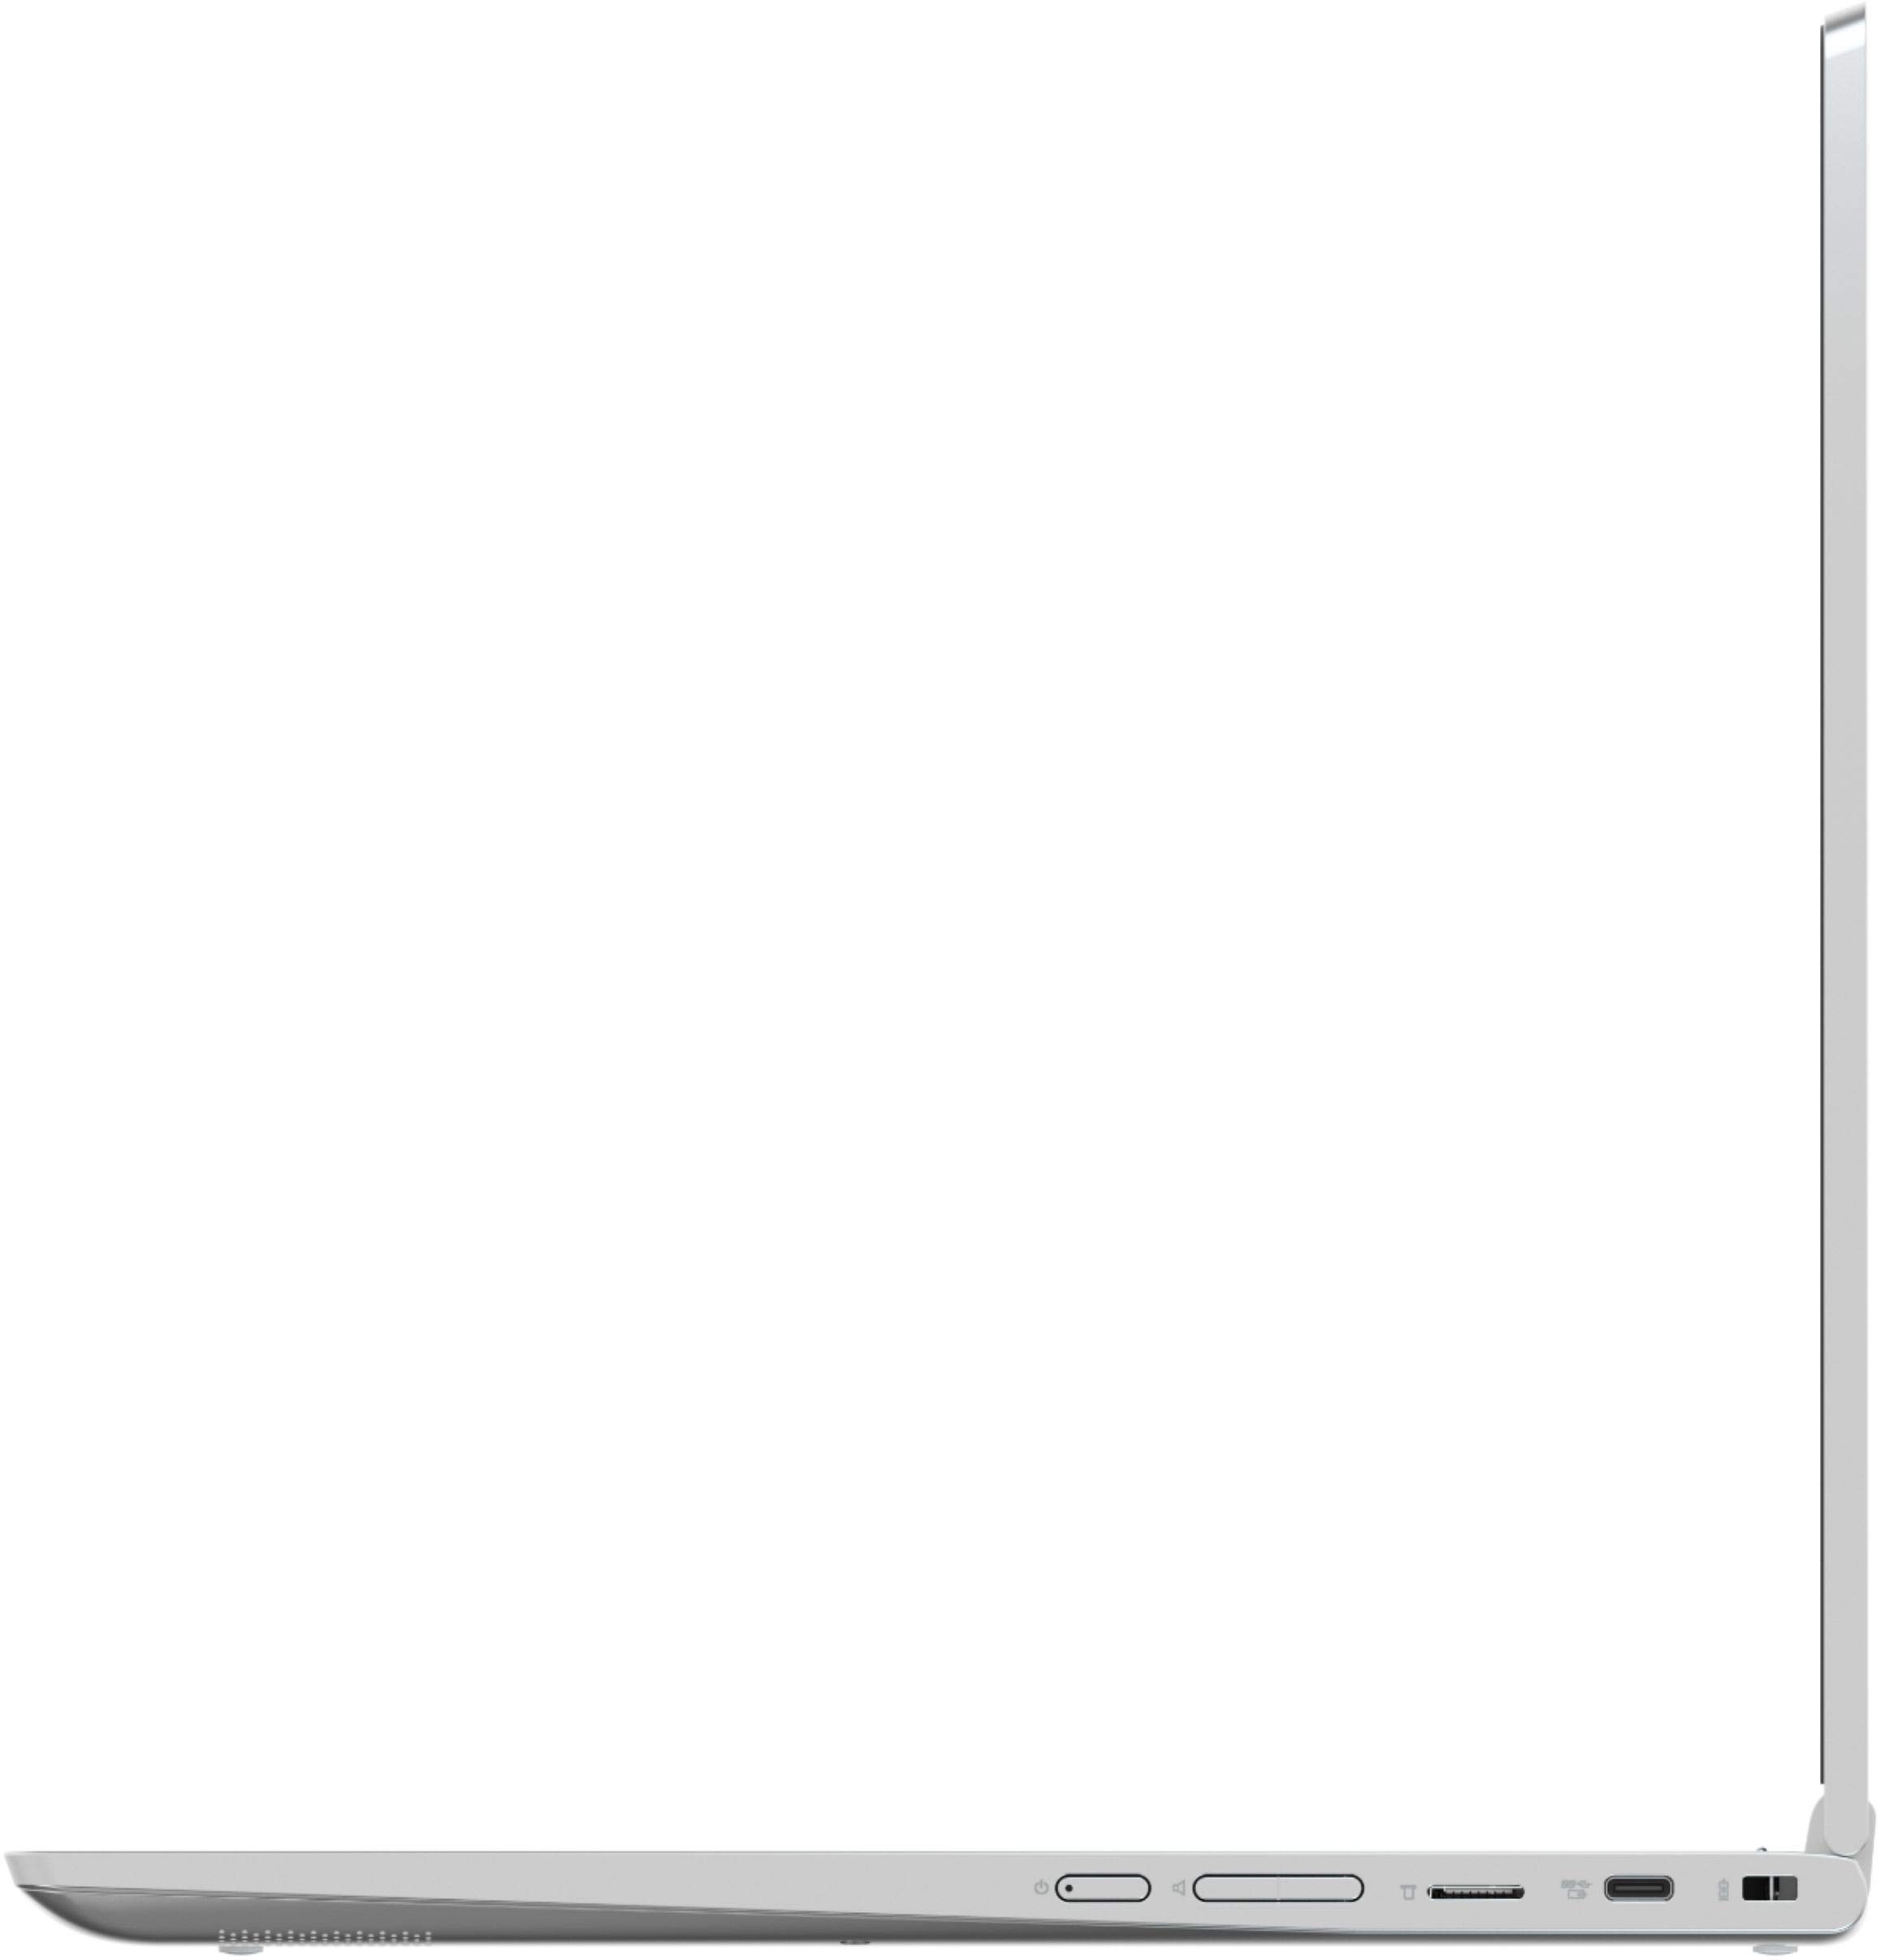 Lenovo C340 2-in-1 (81T9000VUS) Chromebook, 15.6